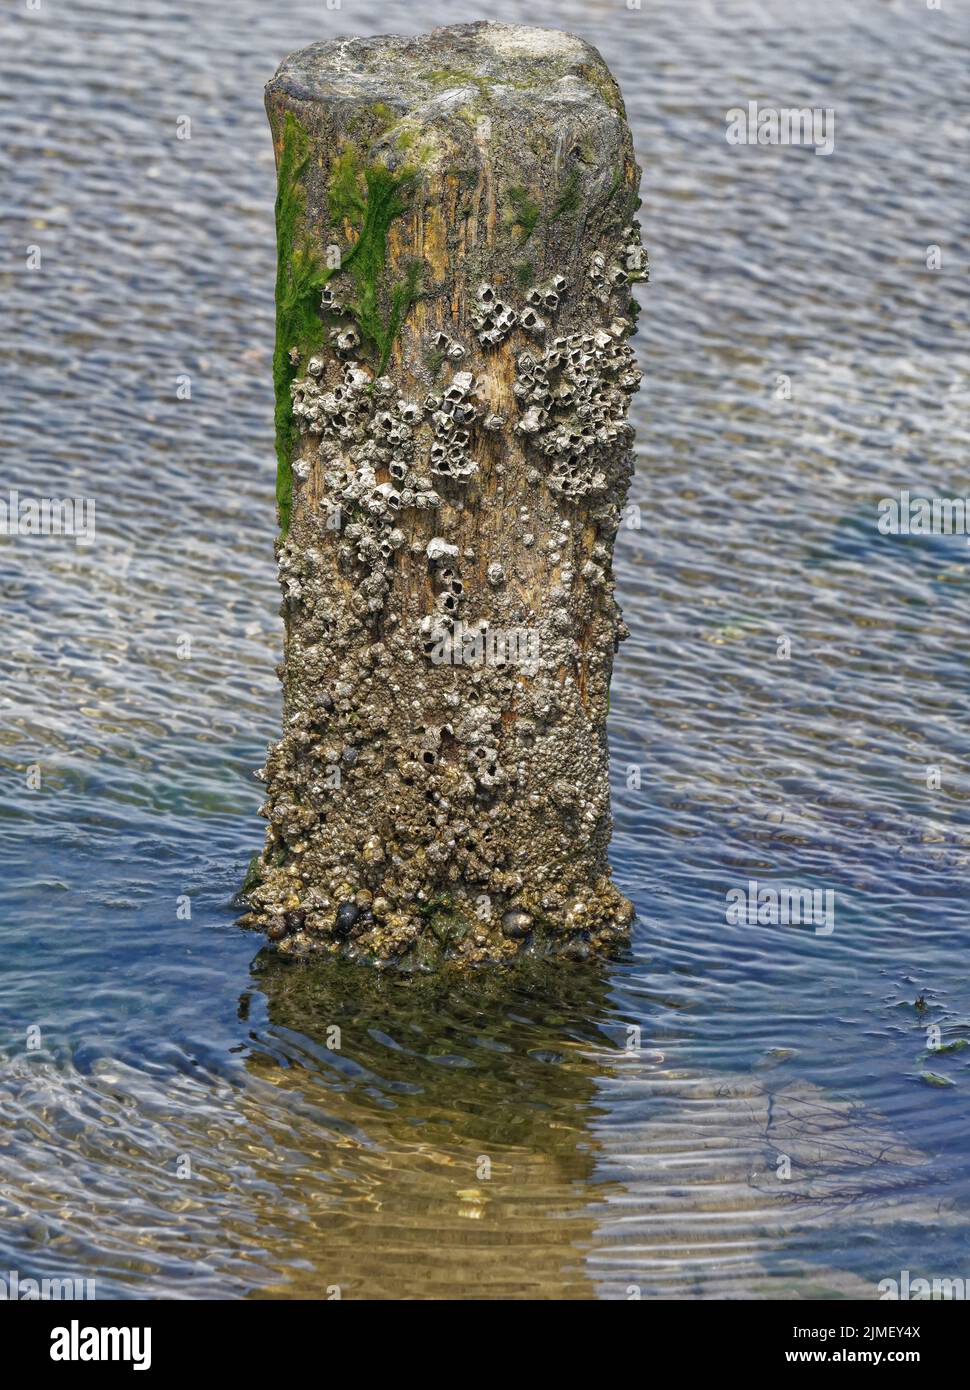 Acorn barnacle,(Semibalanus balanoides) Stock Photo